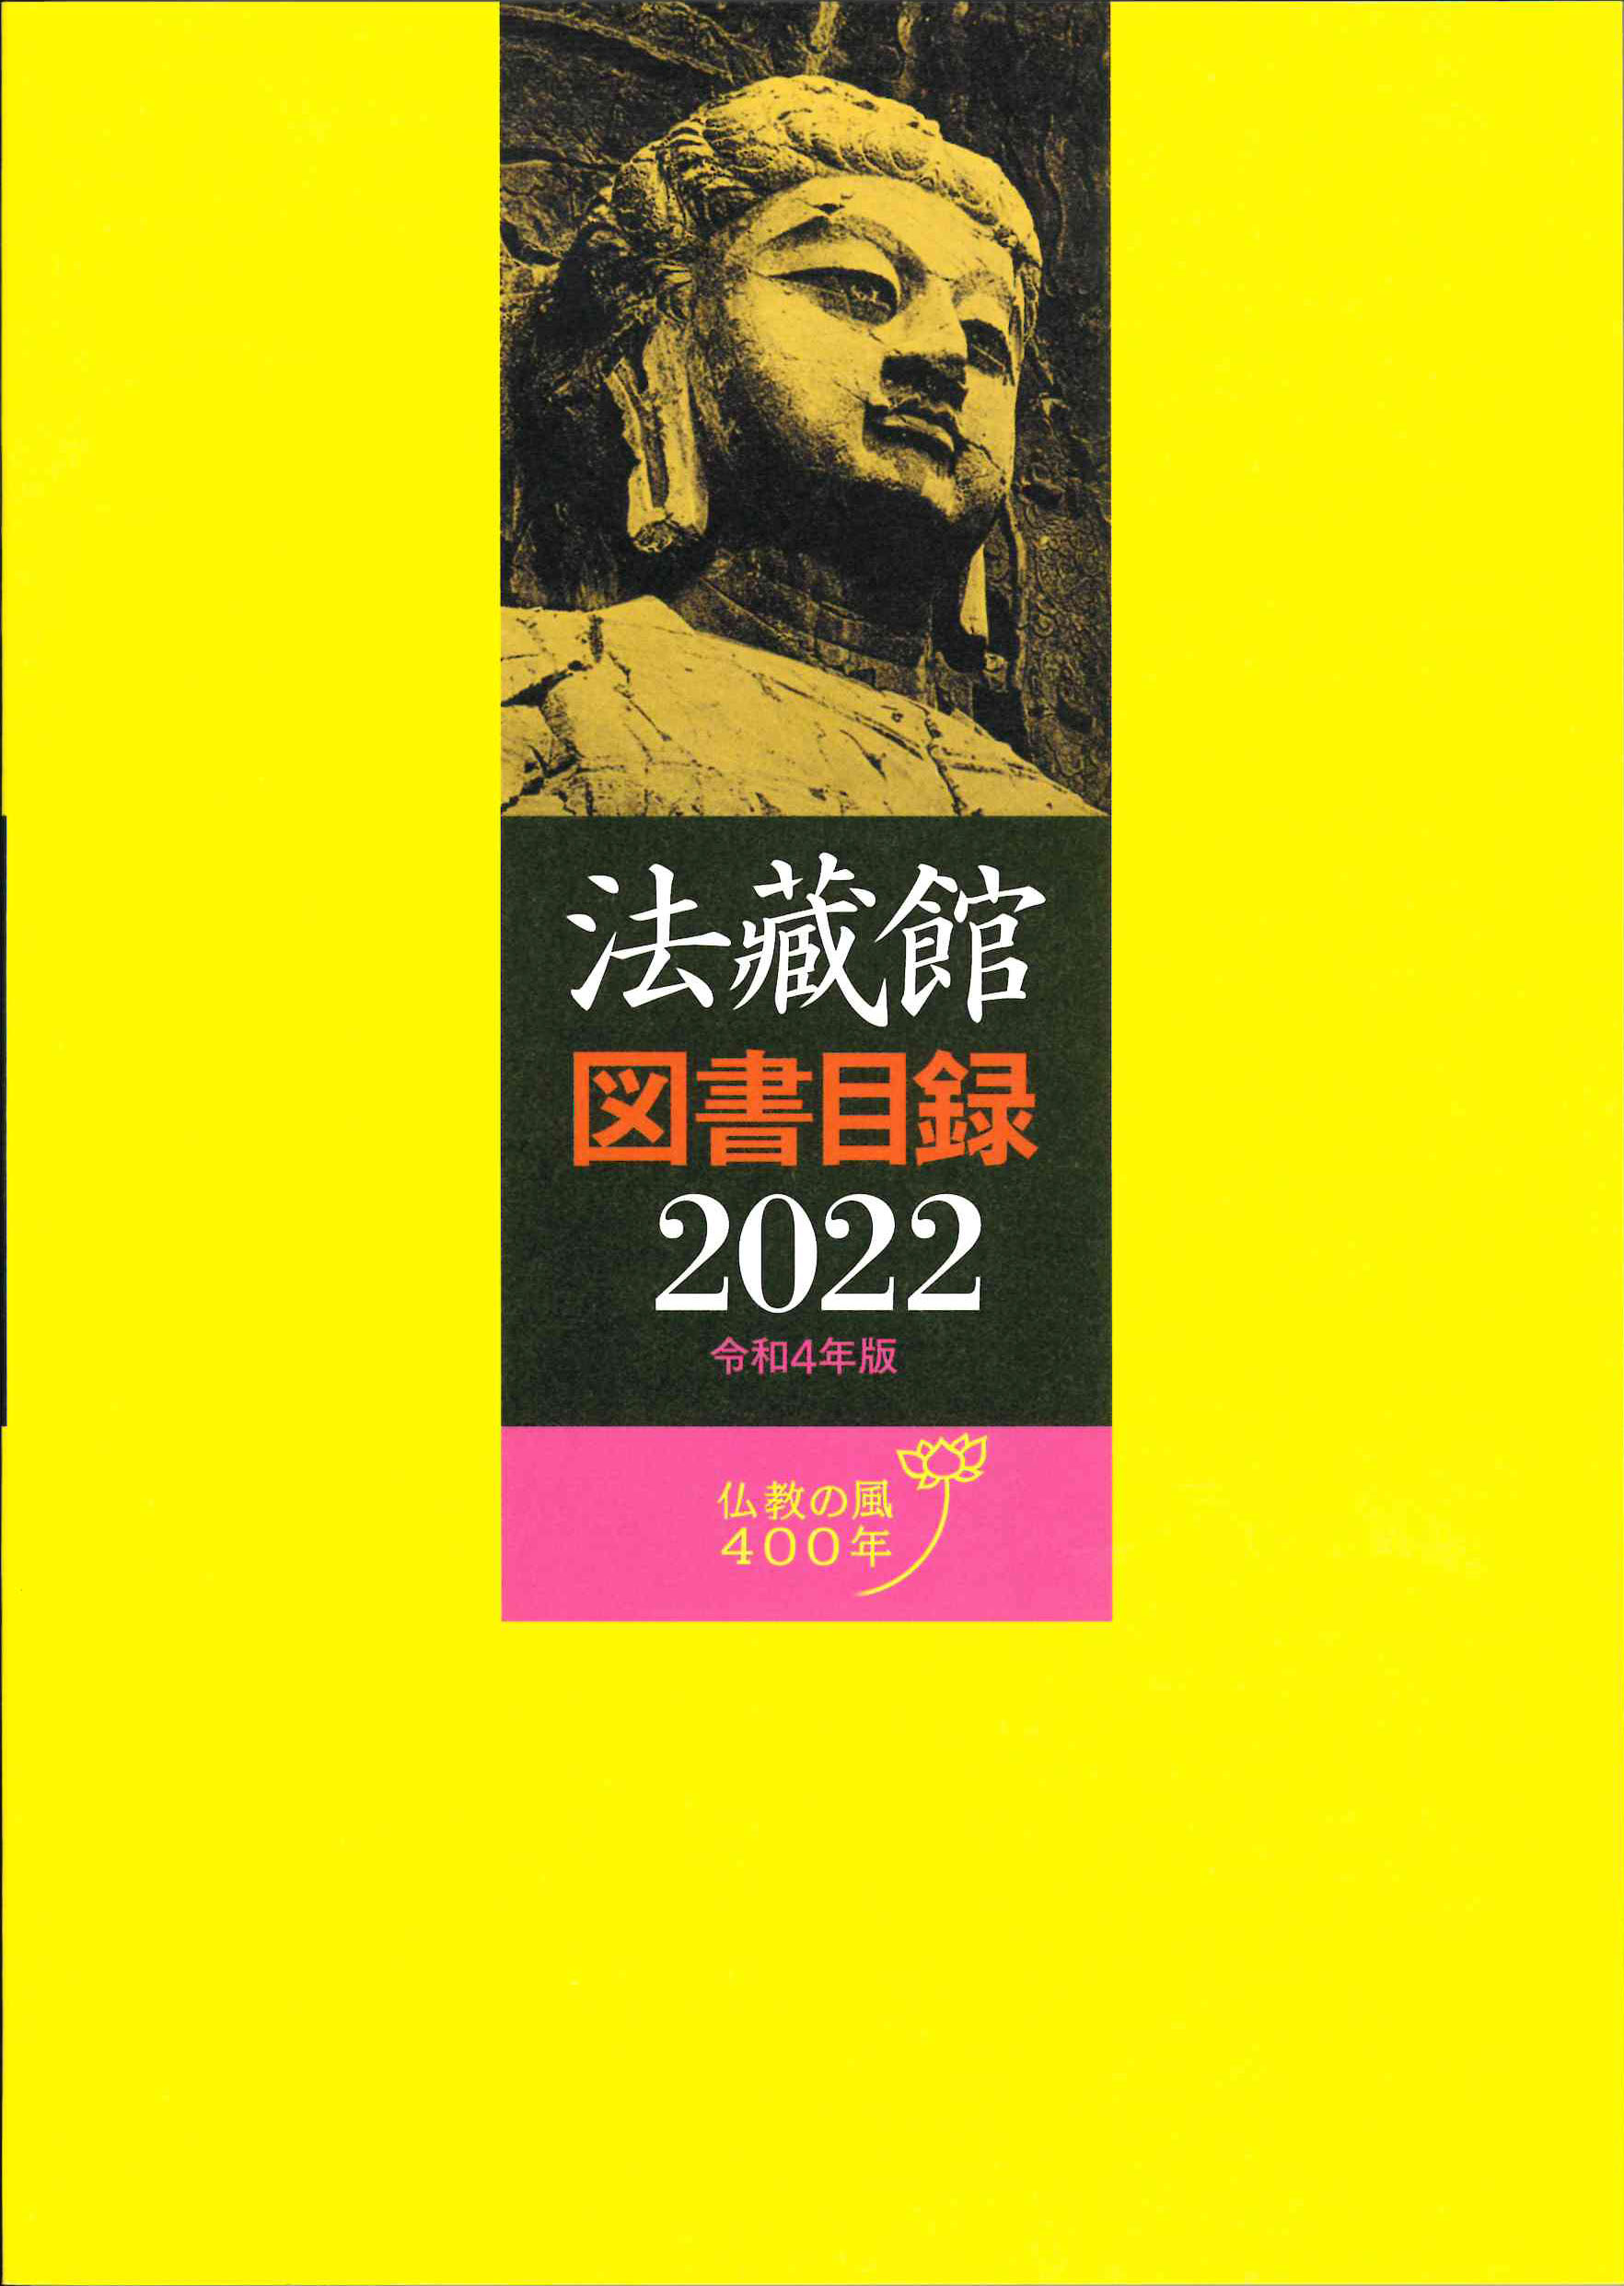 法藏館図書目録（2022年版） - 法藏館 おすすめ仏教書専門出版と書店 